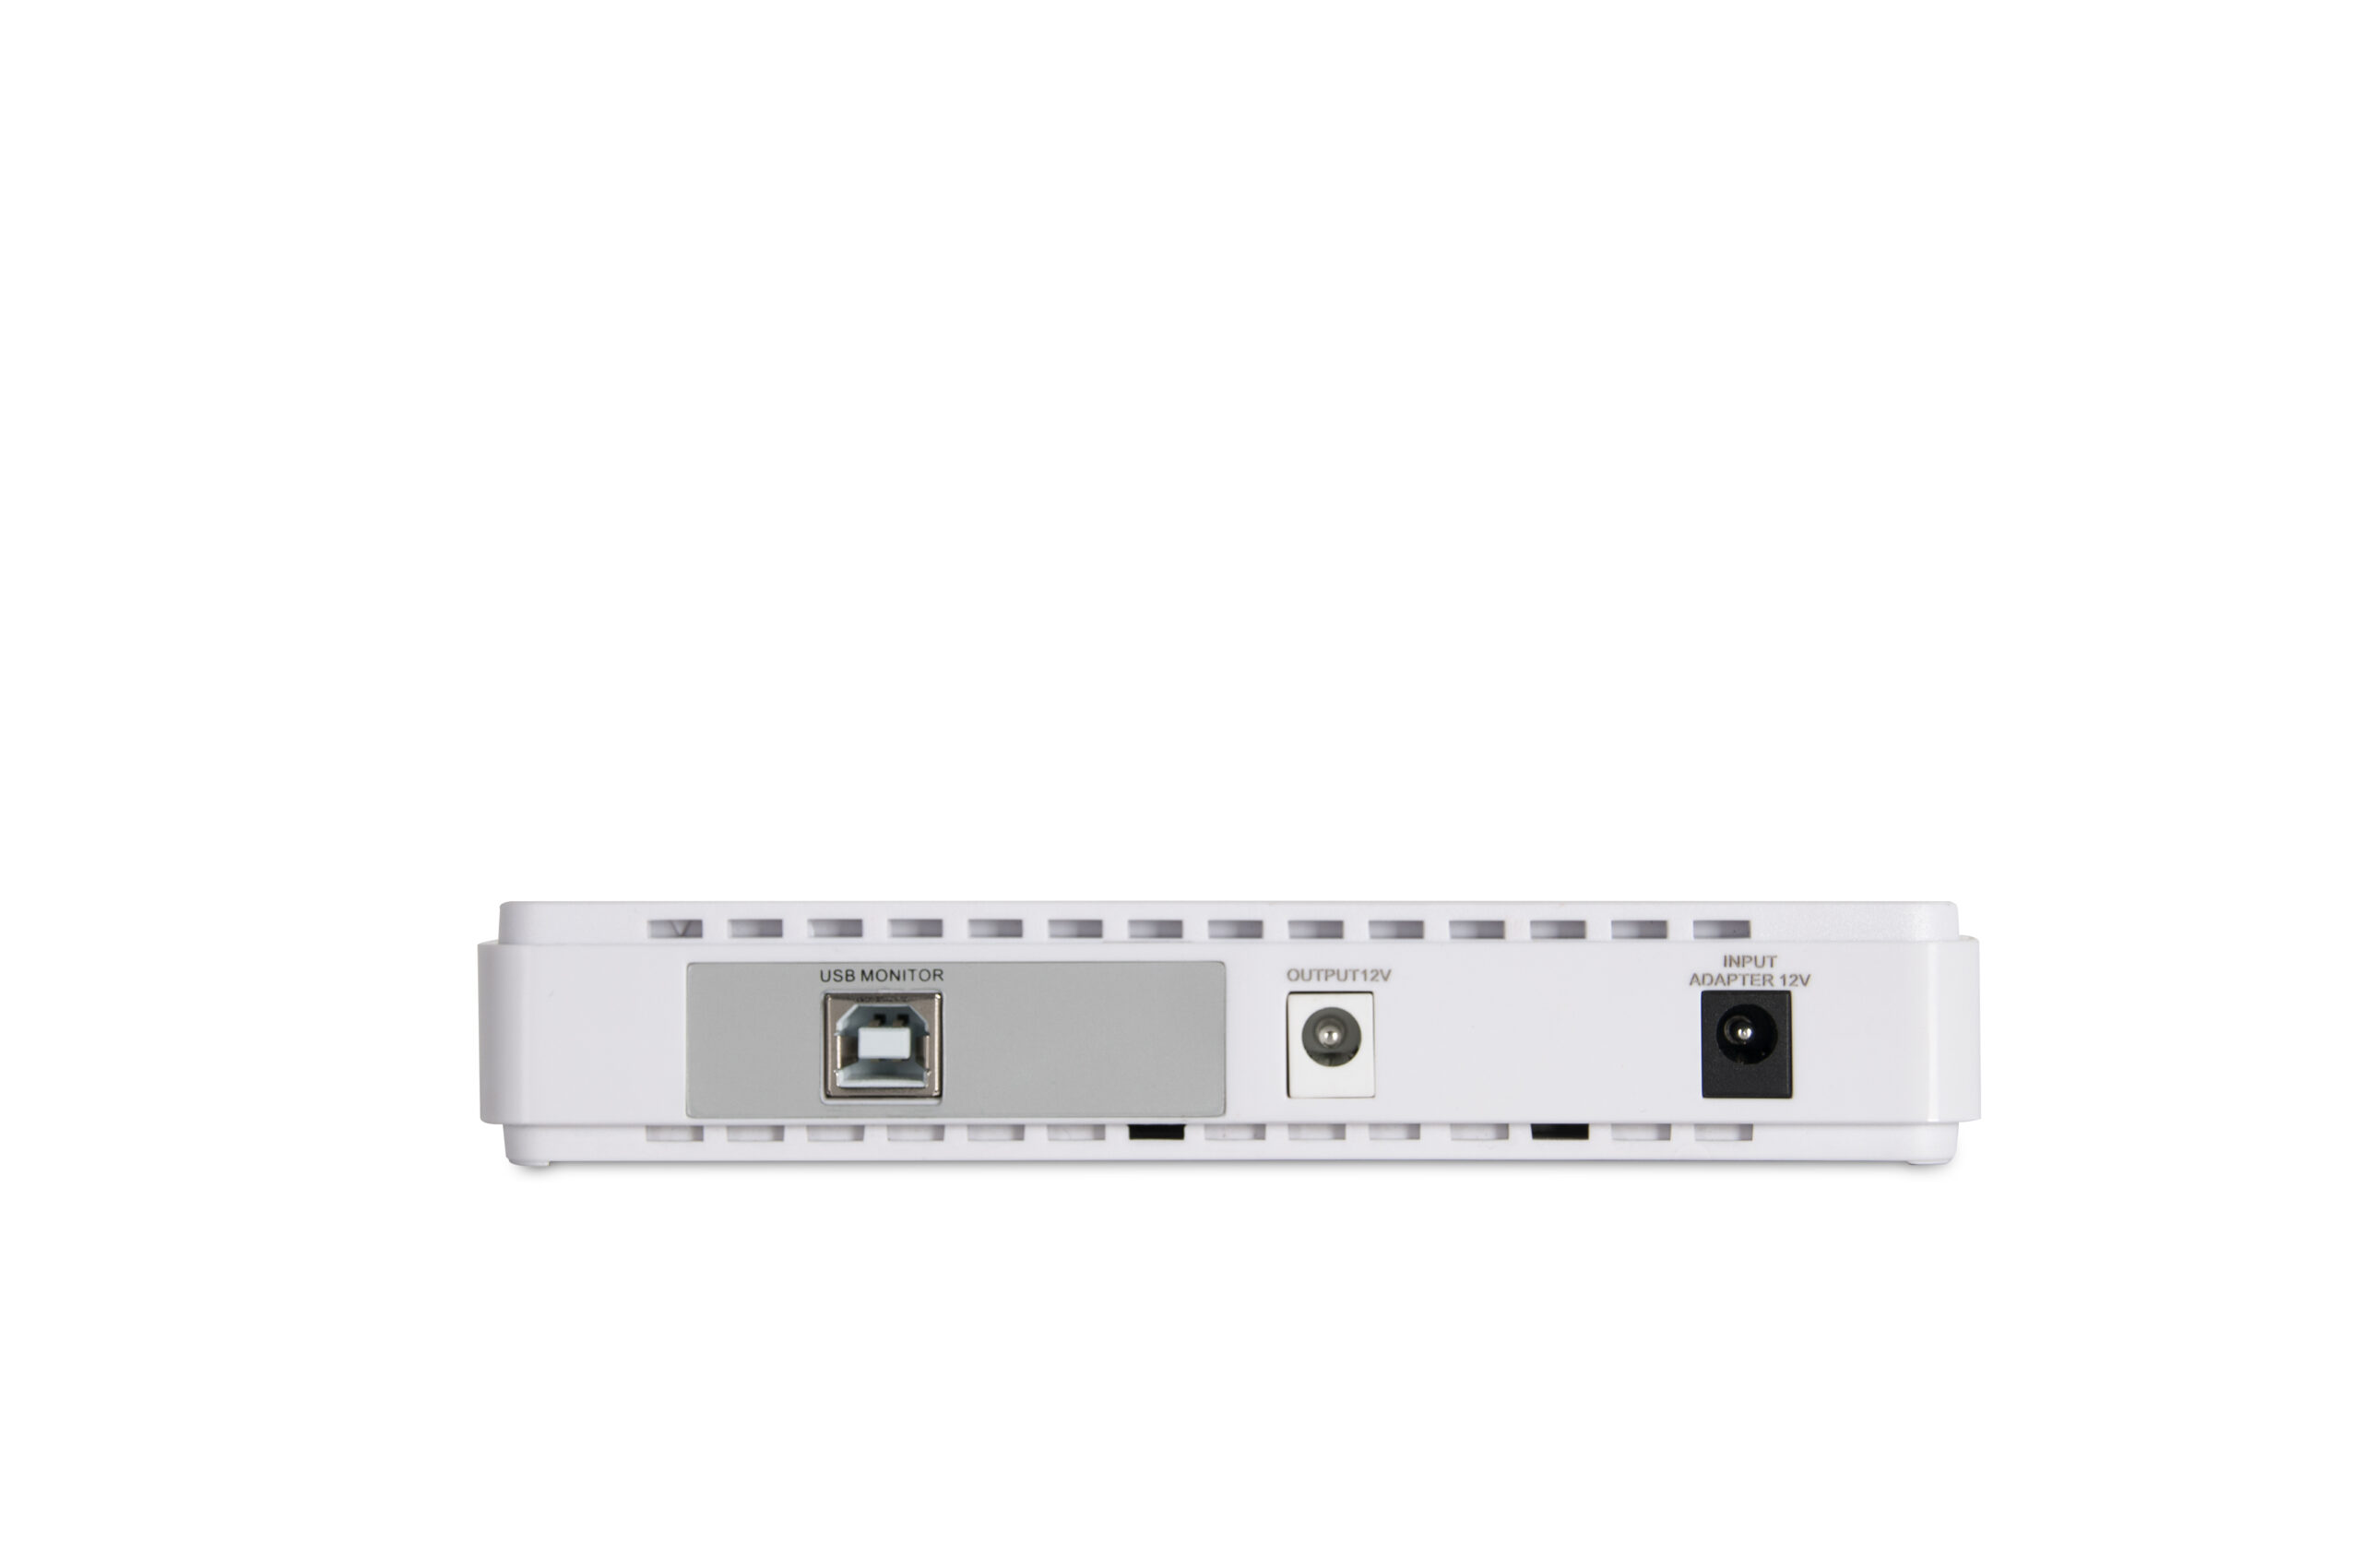 EC15-8000 Series Portable Power Bank DC UPS (15W)